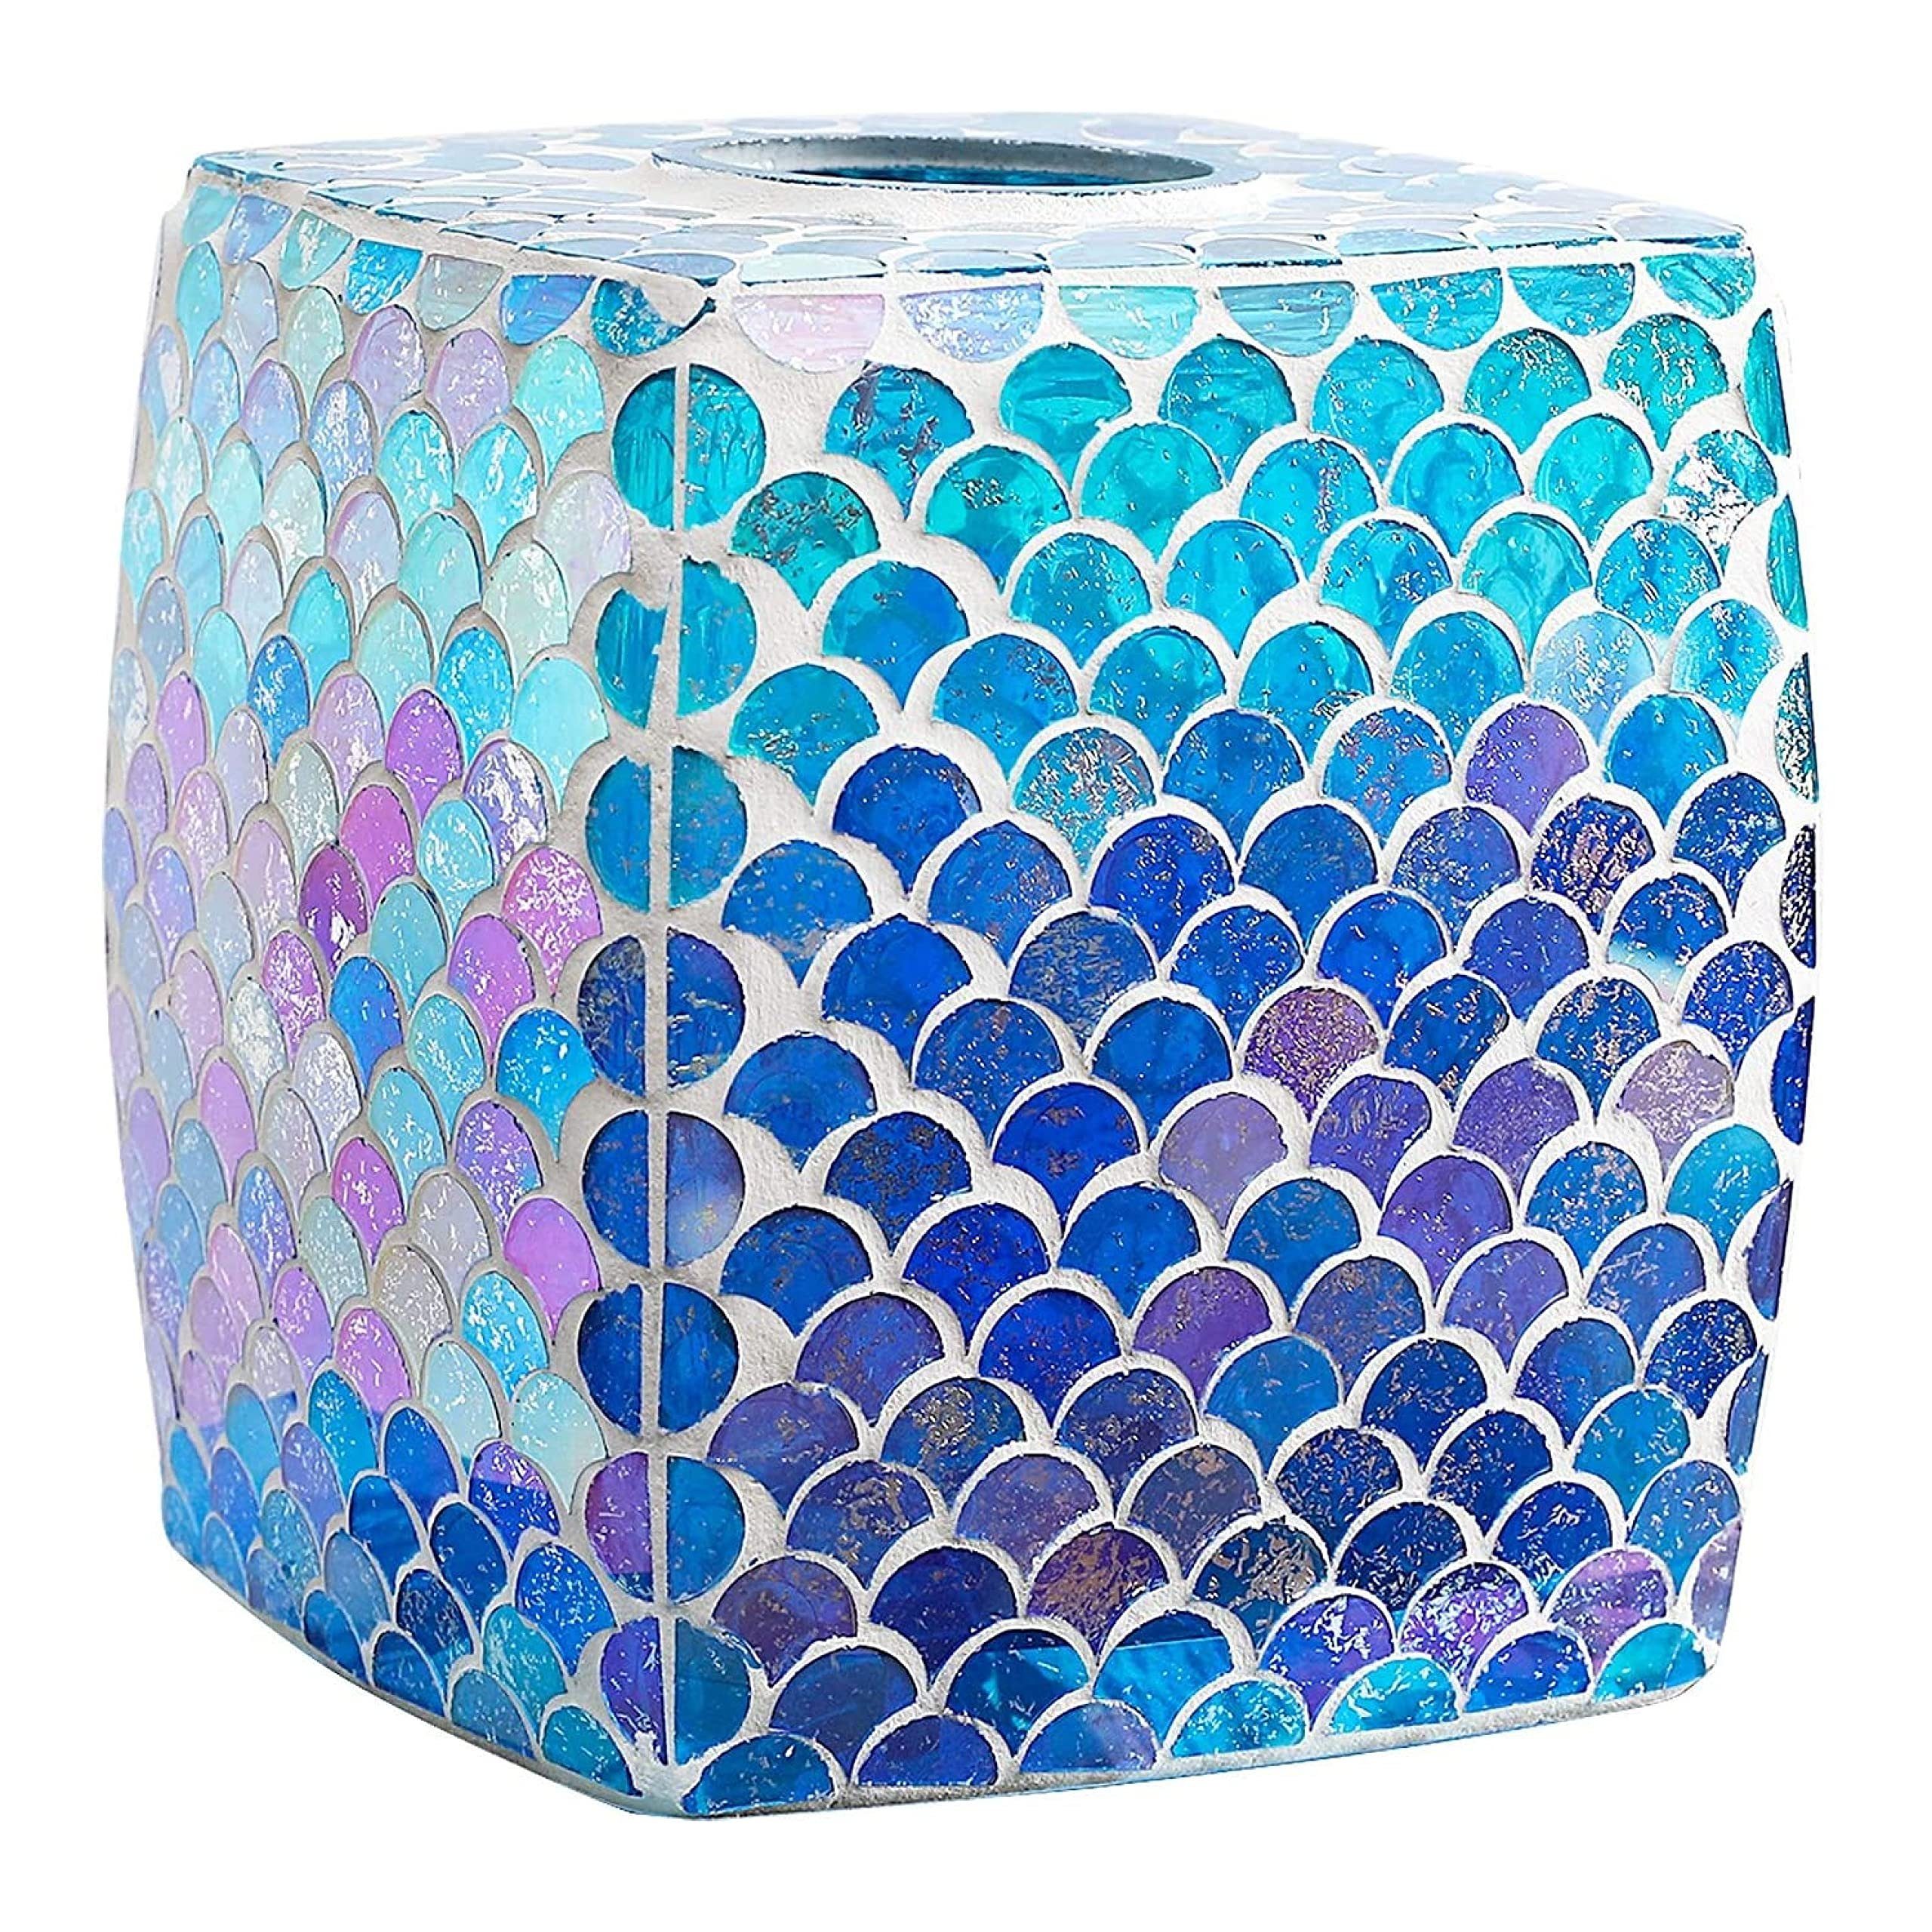 Echtheitsgarantie! Whole Housewares Papiertuchspender Mosaik Taschentuch-Box, Glas Fächerform Bad-Accessoire